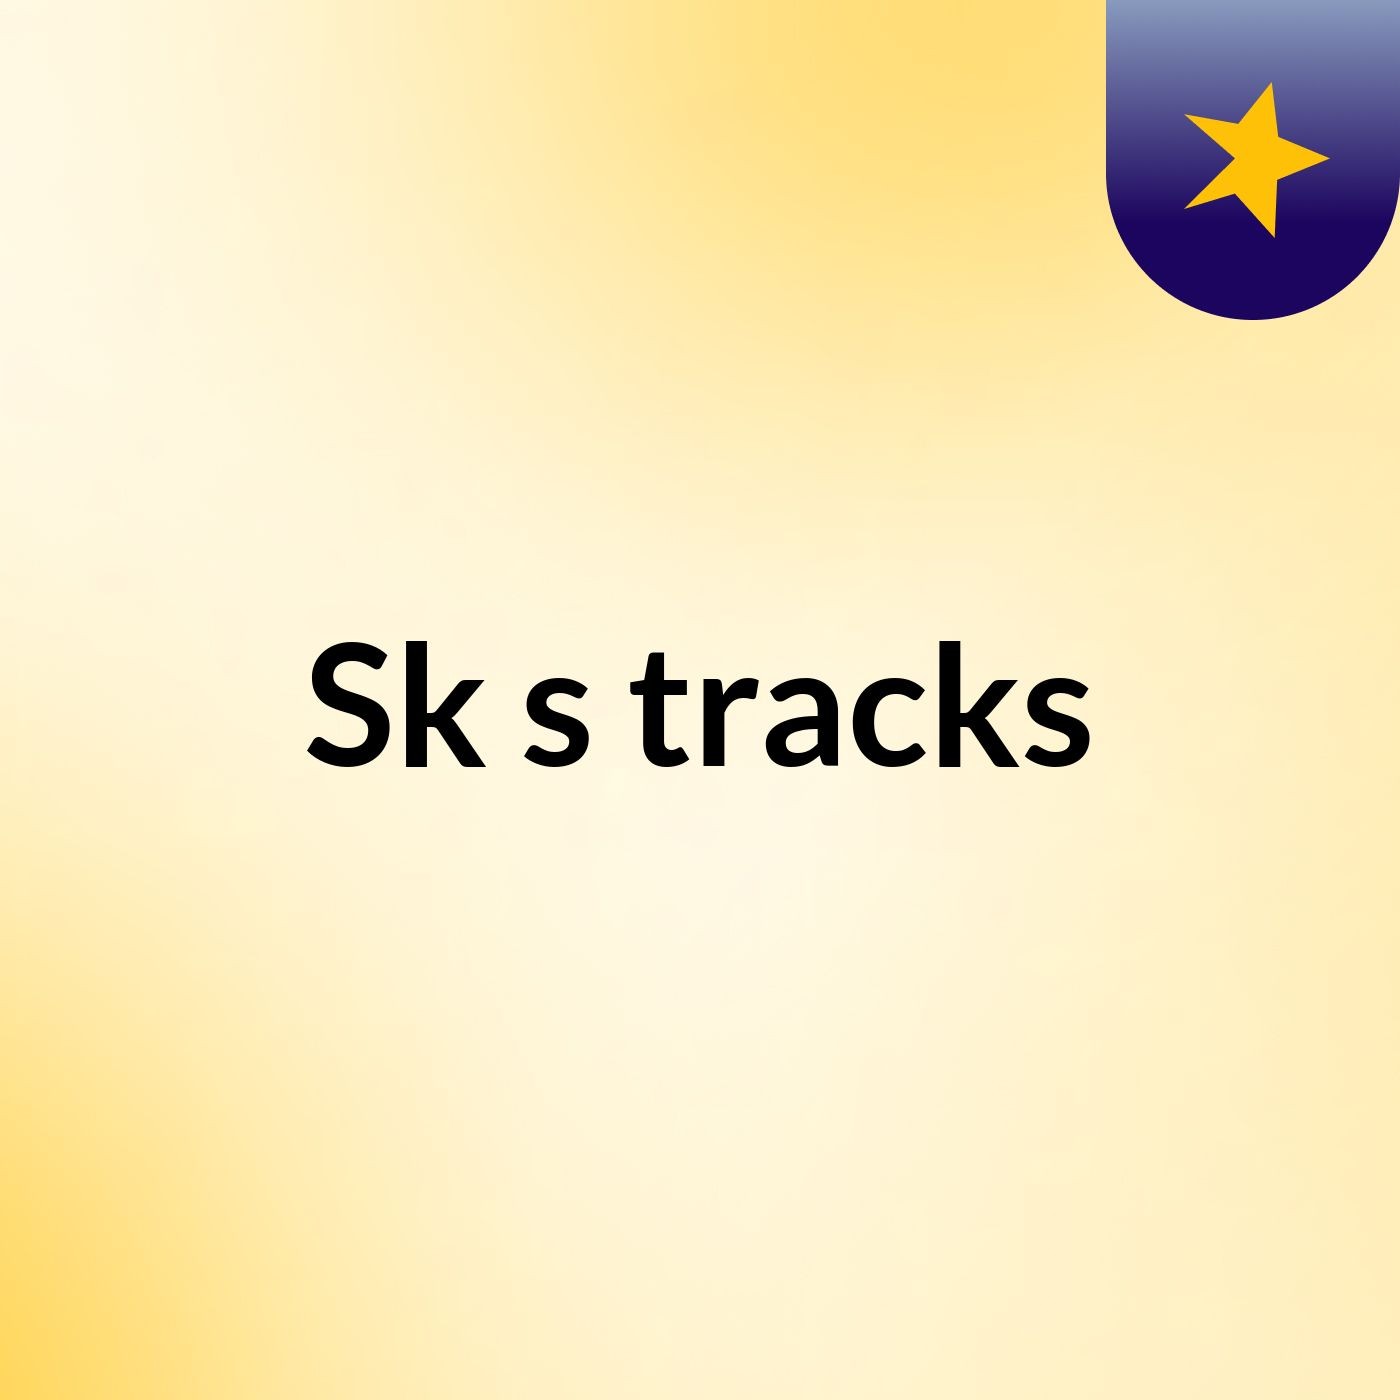 Sk's tracks